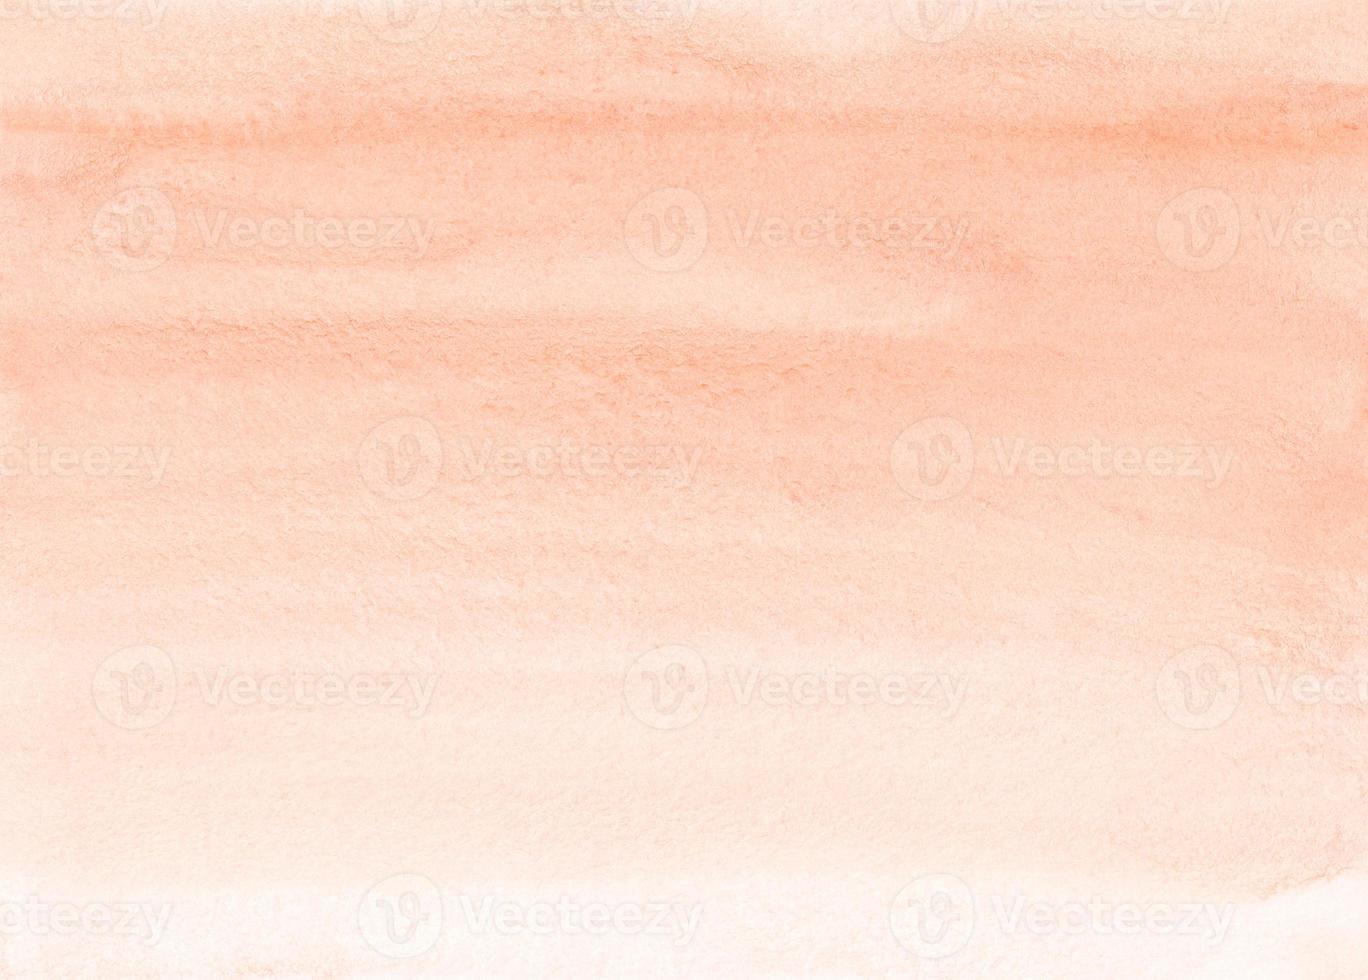 aquarell leichte korallenfarbverlauf hintergrundtextur. Pinselstriche auf Papier. Pfirsichfarbener Hintergrund. foto